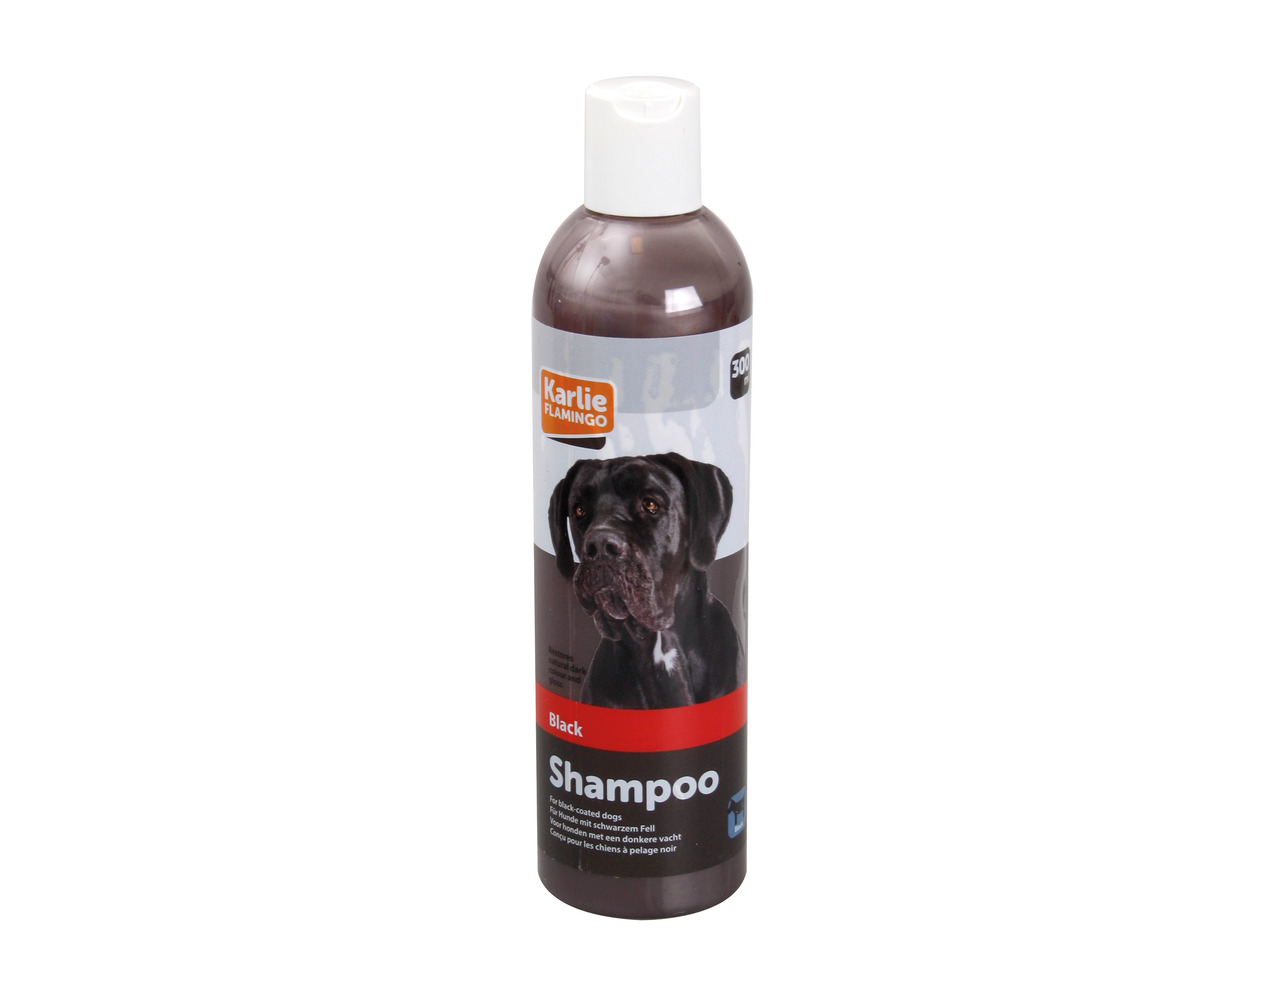 Shampoo für schwarzes Fell - 300 ml